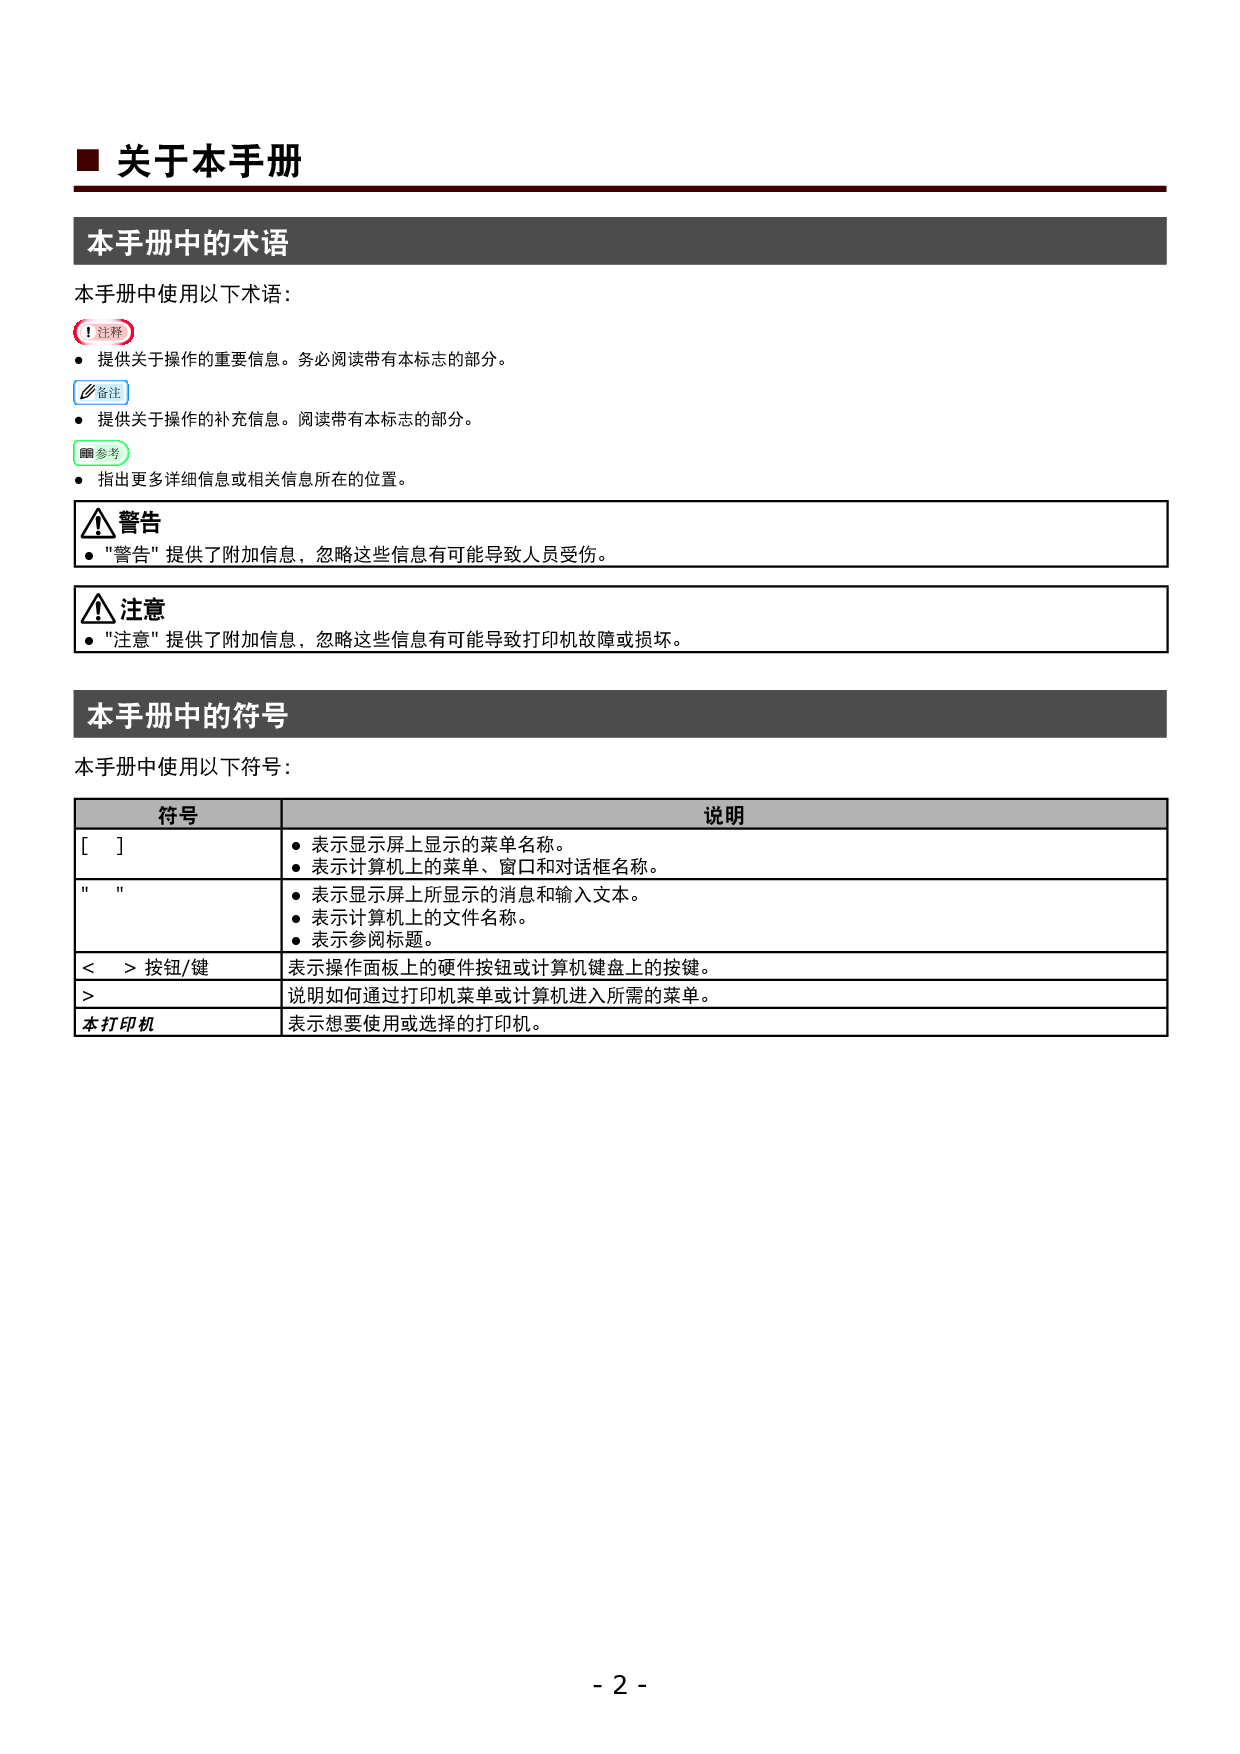 OKI C831dn, ES8431 应用 用户手册 第1页